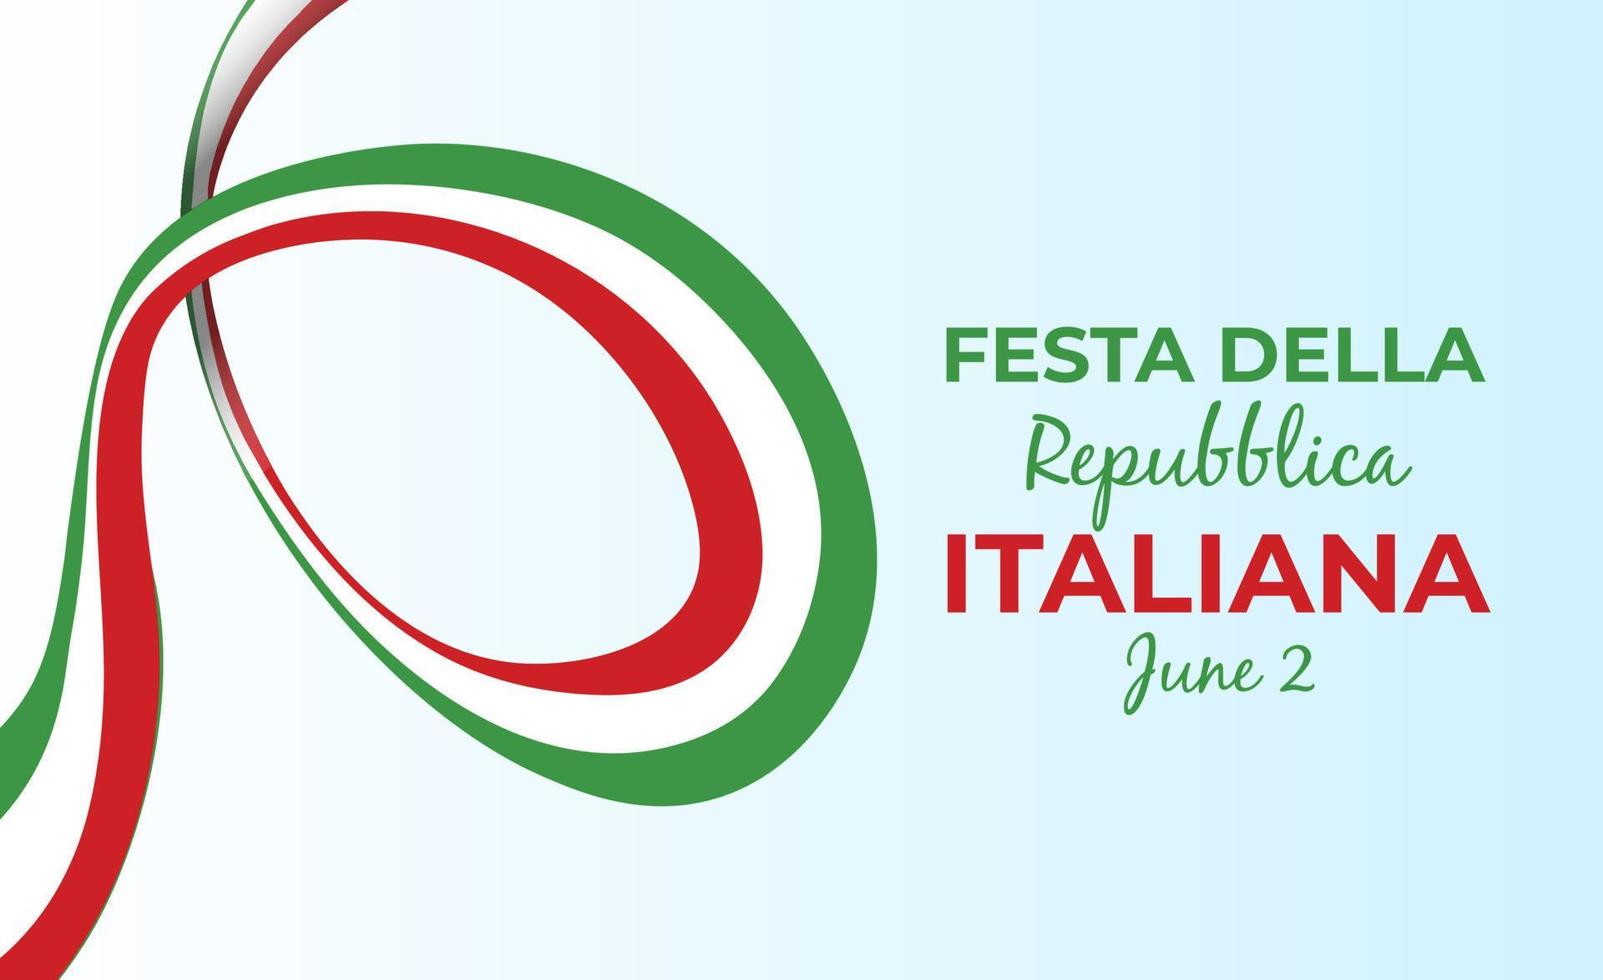 Italienisch Republik Tag, 2 .. Juni, festa della repubblica Italienisch, gebogen winken Band im Farben von das Italienisch National Flagge. Feier Hintergrund vektor